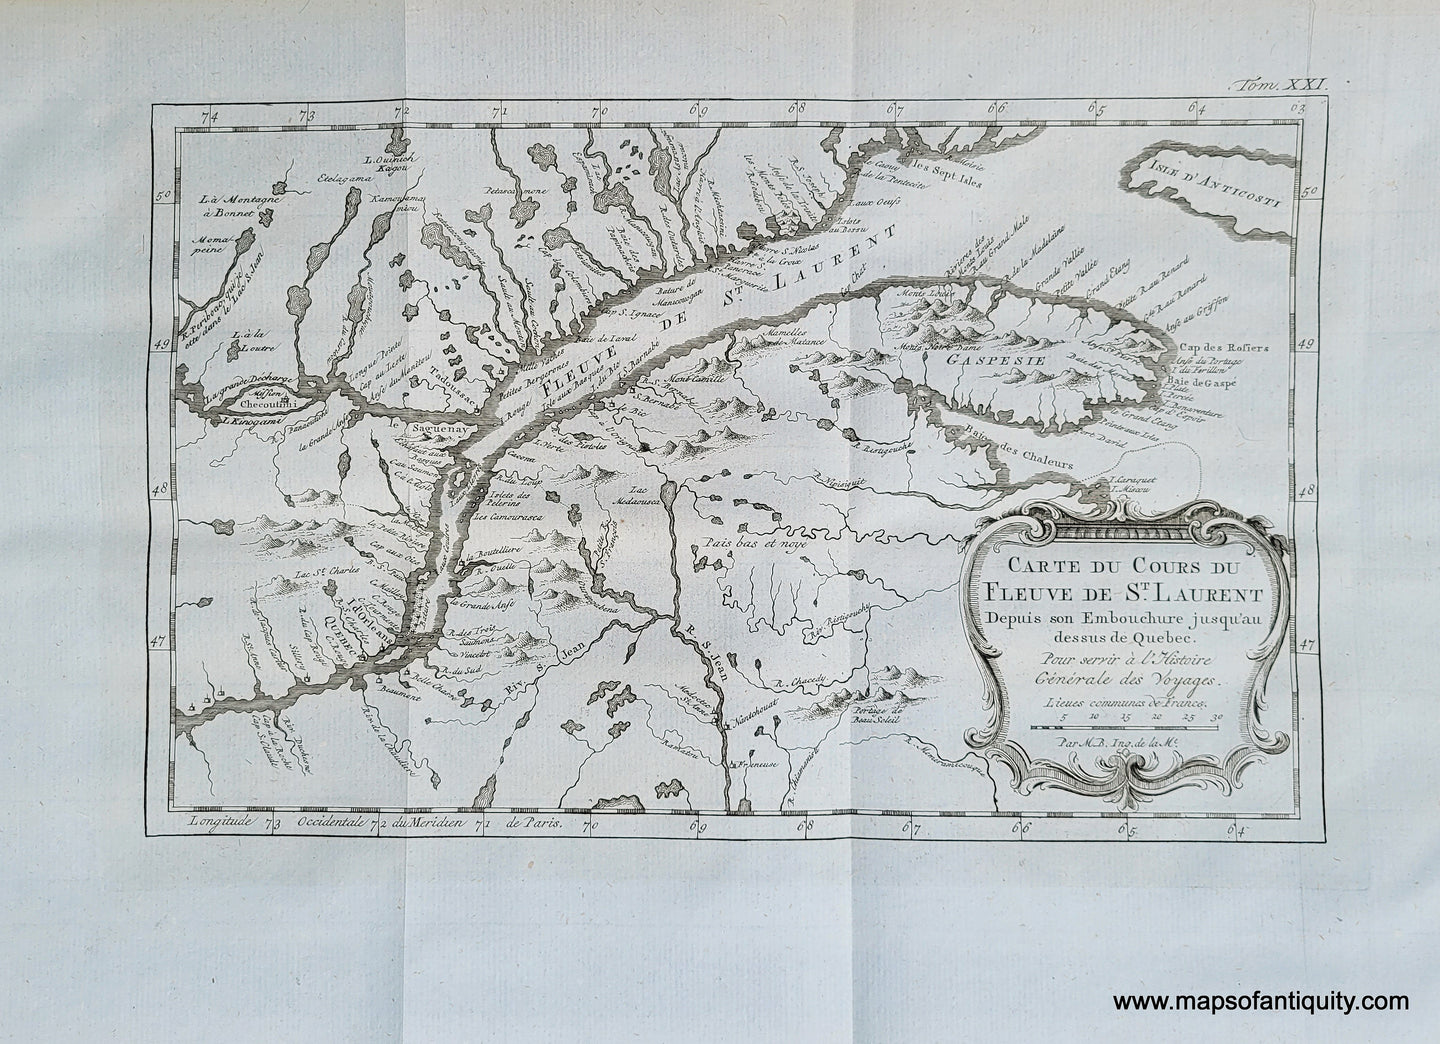 Antique-Map-Carte-du-Cours-du-Fleuve-de-St.-Laurent-depuis-son-Embouchure-jusqu'au-dessus-de-Quebec-1757-Bellin-1700s-18th-century-Saint-Lawrence-River